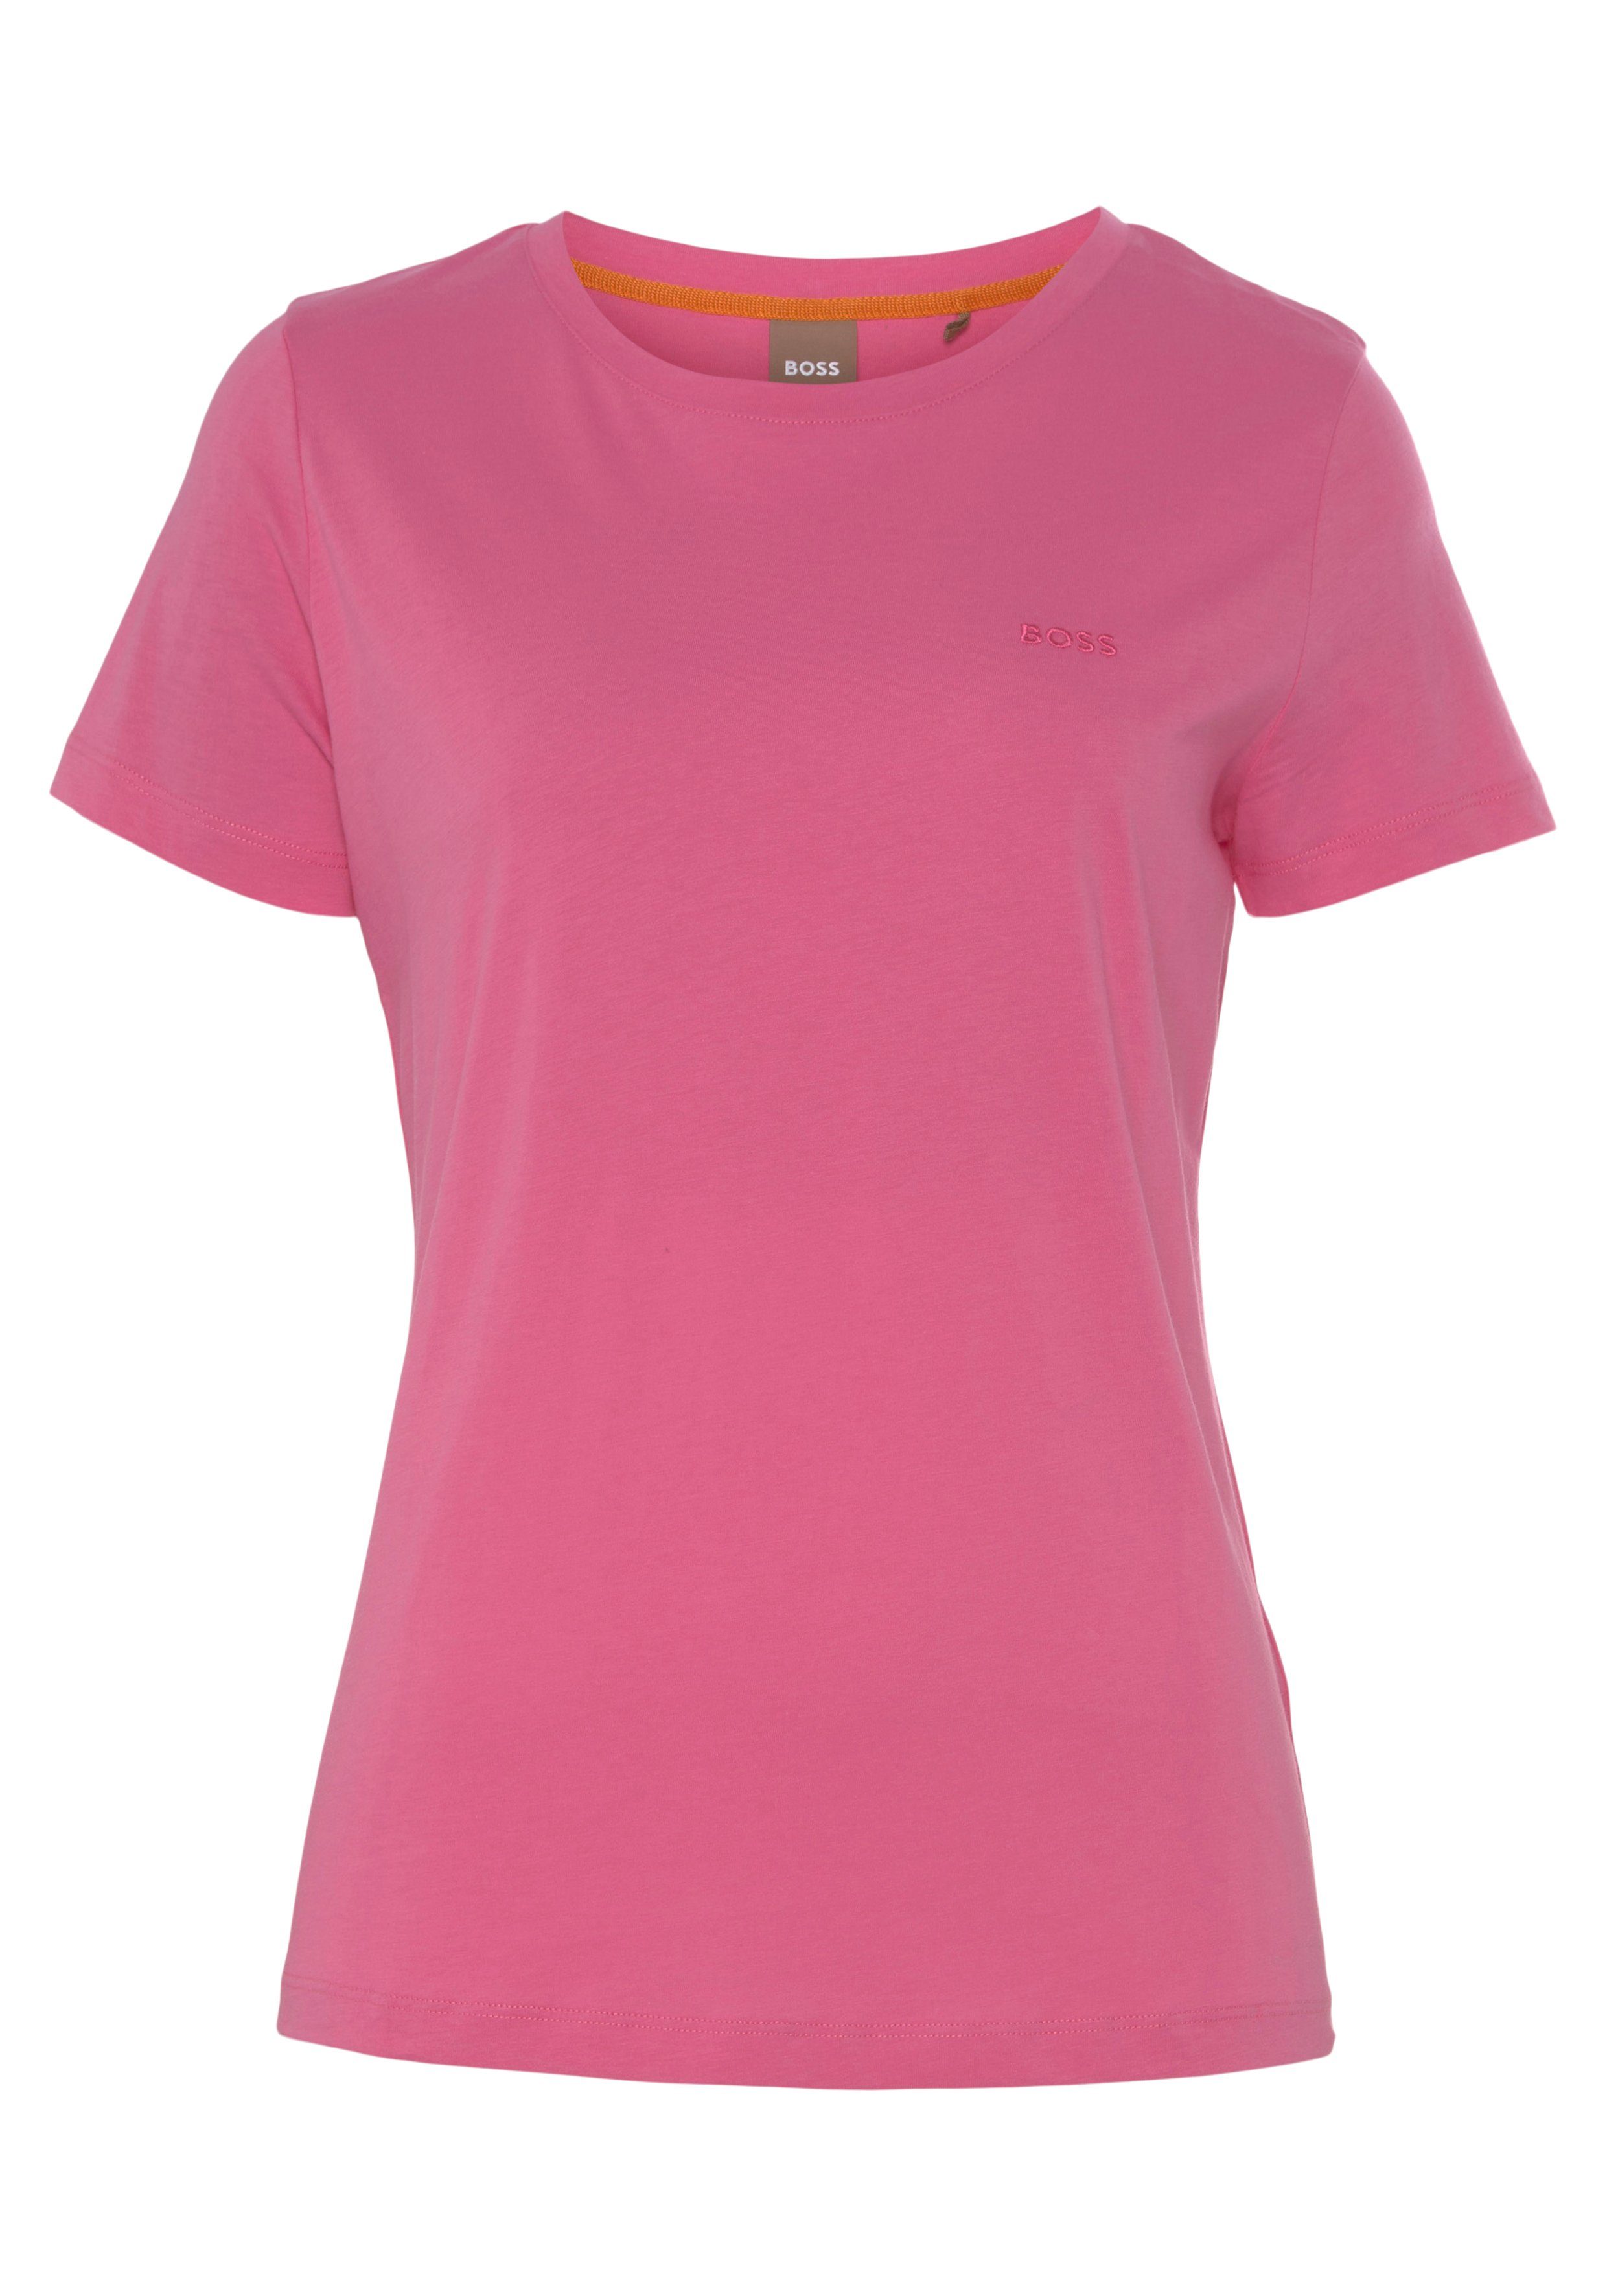 Qualität mit weicher, BOSS T-Shirt Stoff, medium_pink1 hochwertiger Premium ORANGE Logostickerei,